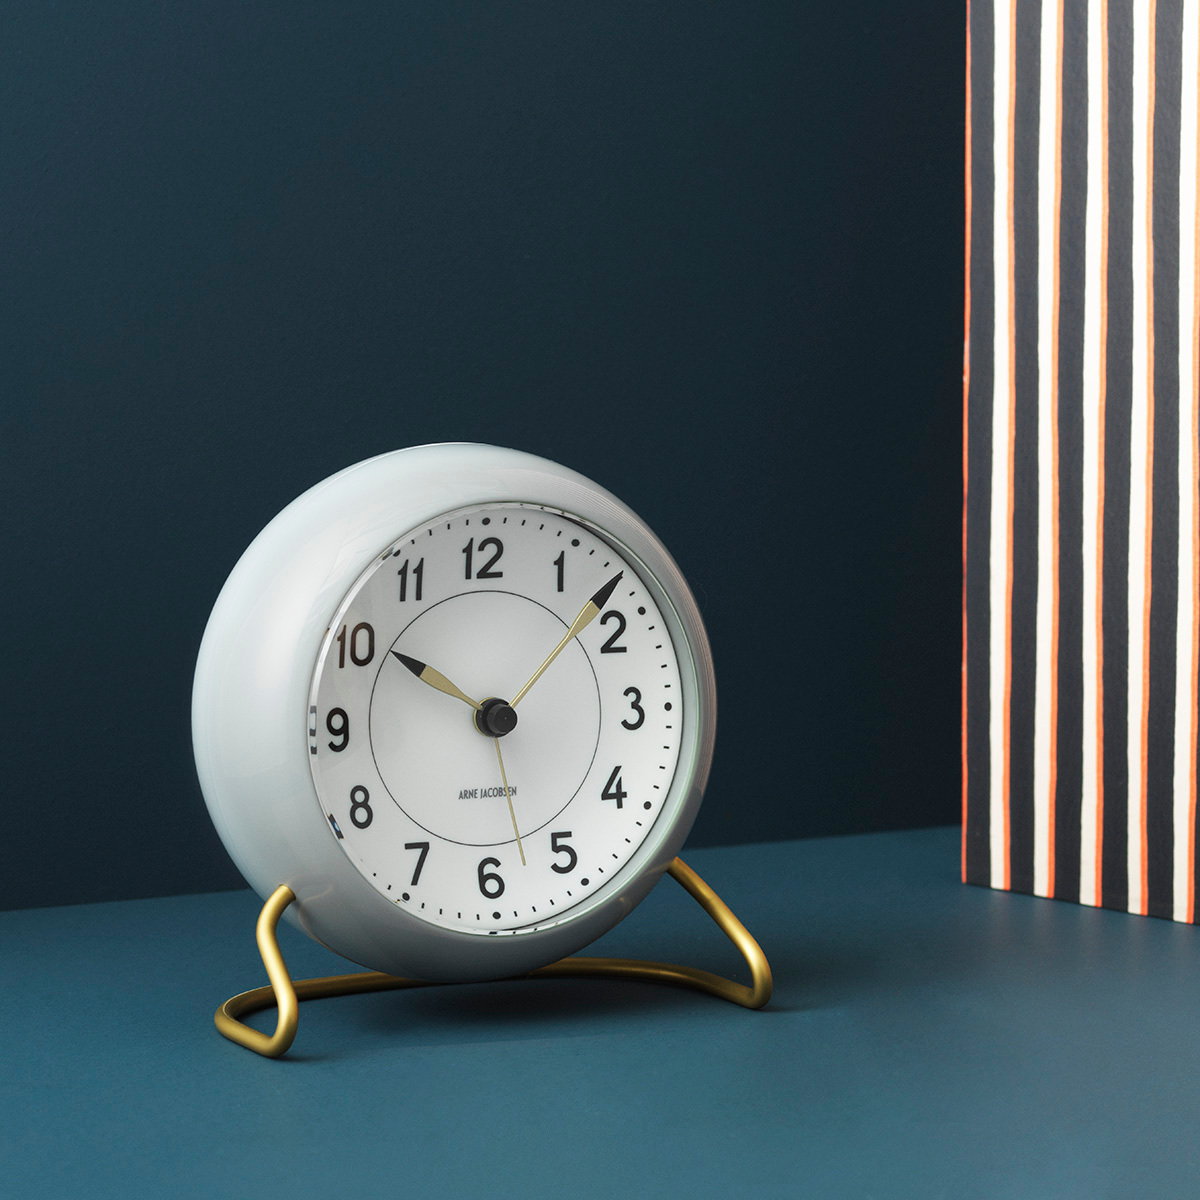 Station bordklokke fra Arne Jacobsen Clocks